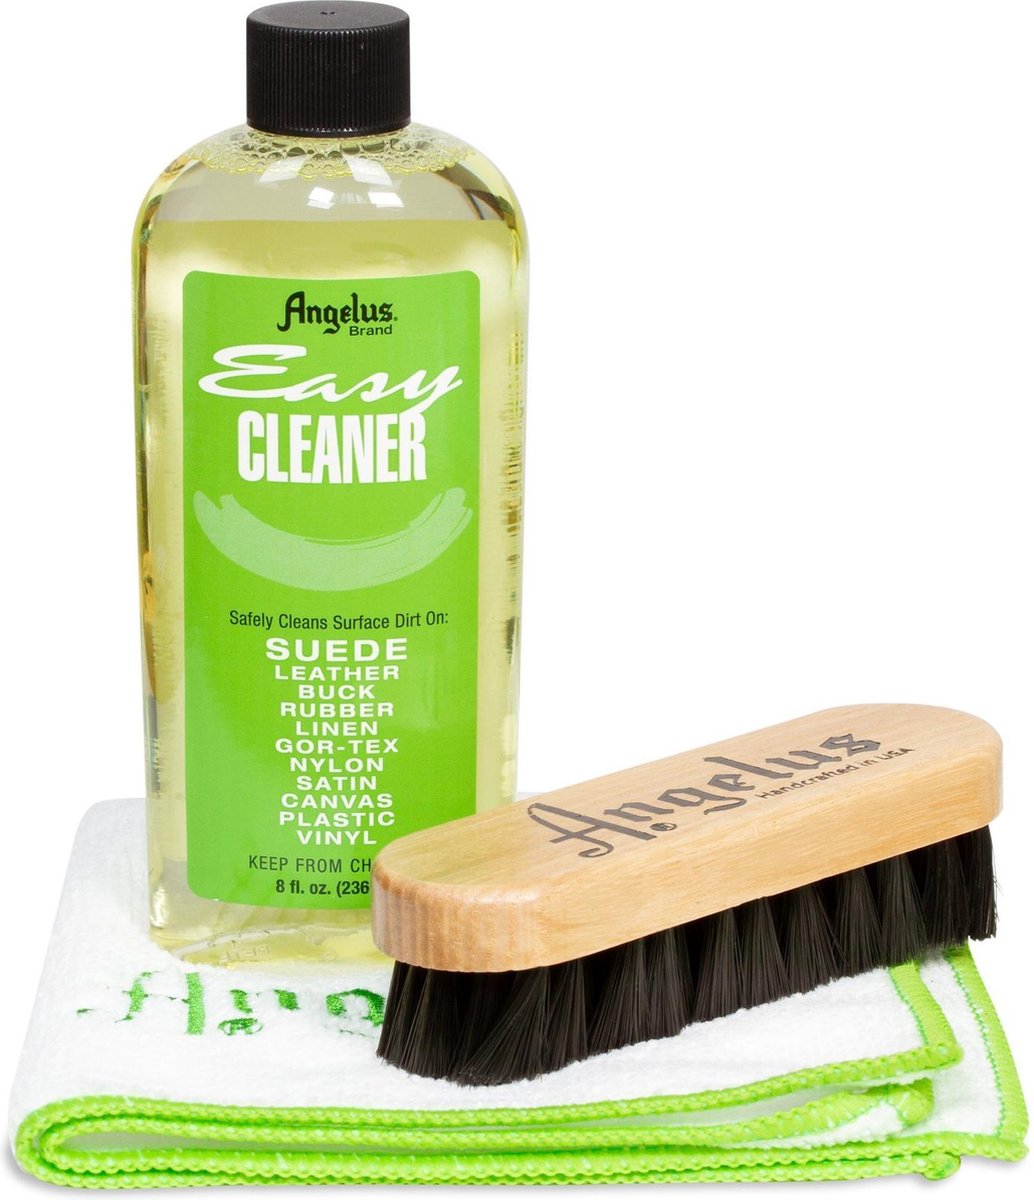 Angelus Easy Cleaner kit - Sneaker reiniger set met borstel en poetsdoek